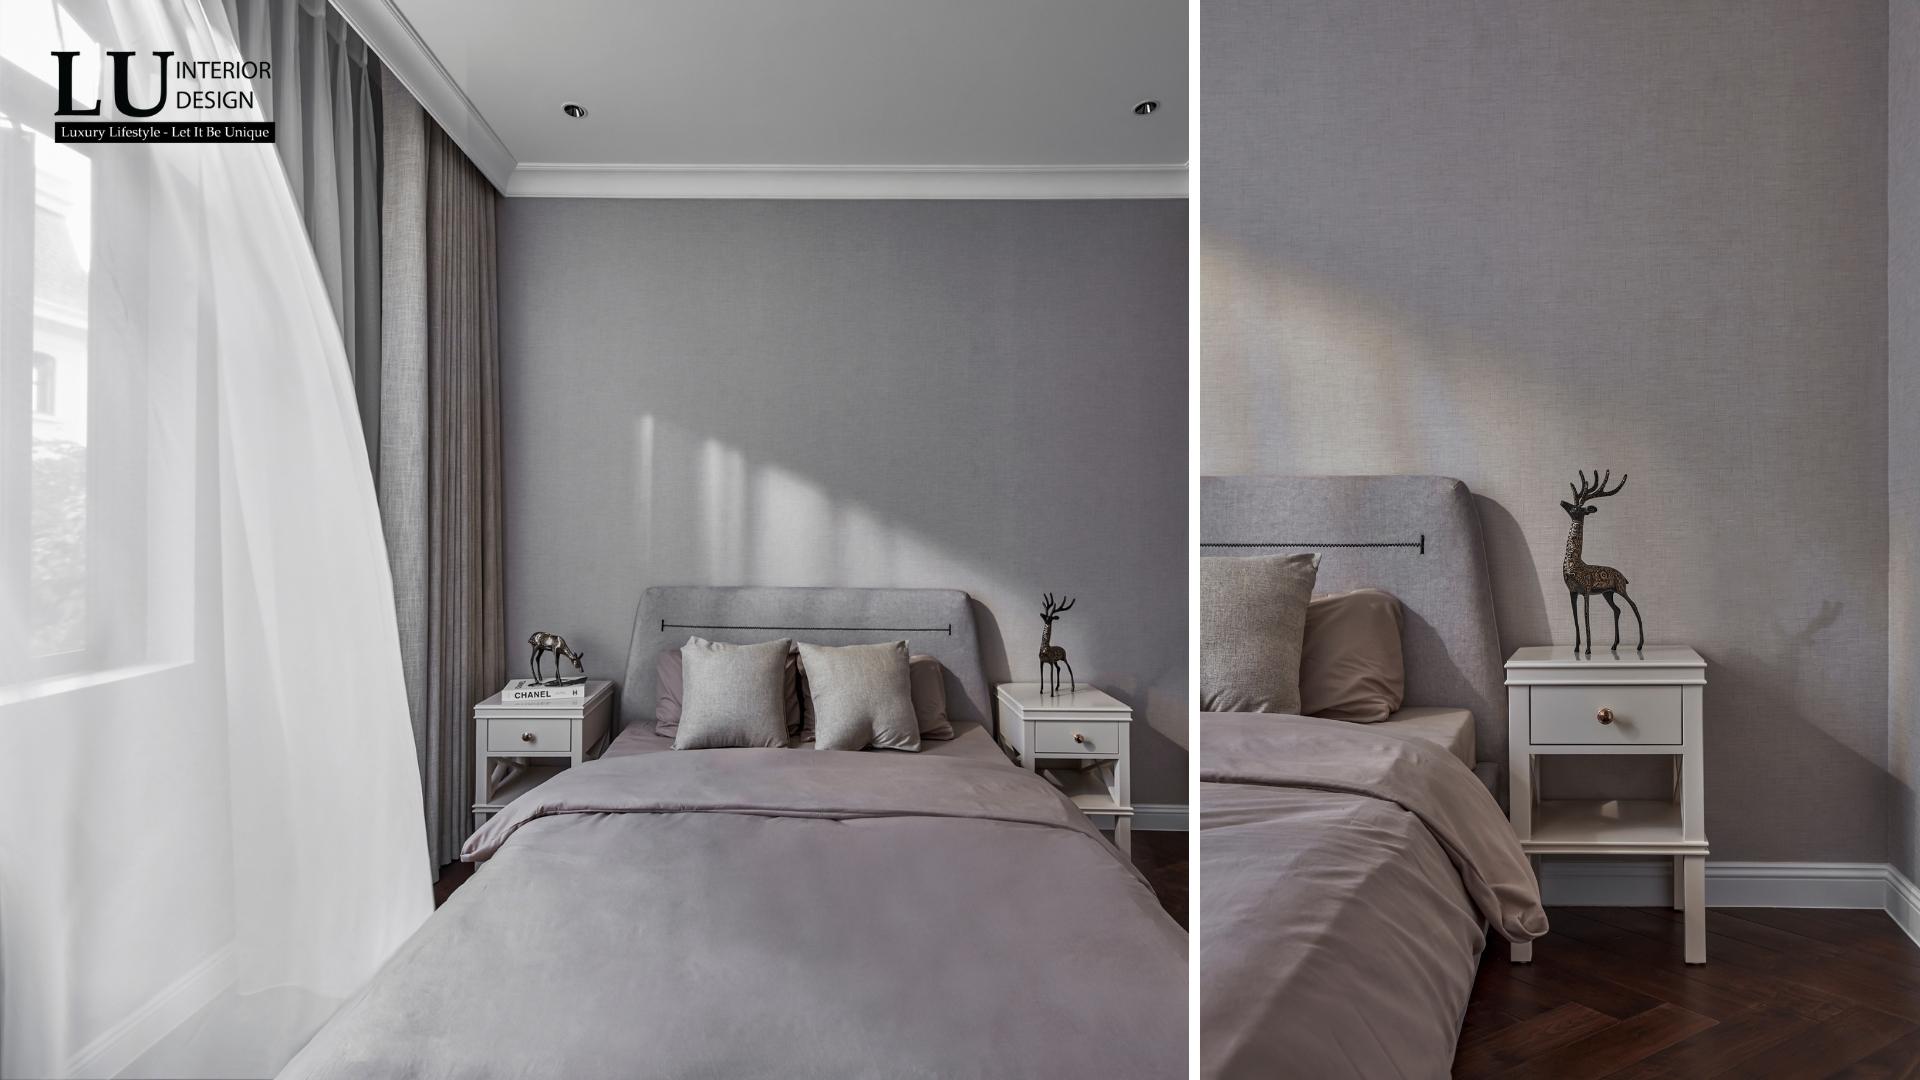 Không gian phòng ngủ nữ tính với gam màu trung tính nhẹ nhàng và đầy chất thơ | Dự án Victoria Village - LU Design.